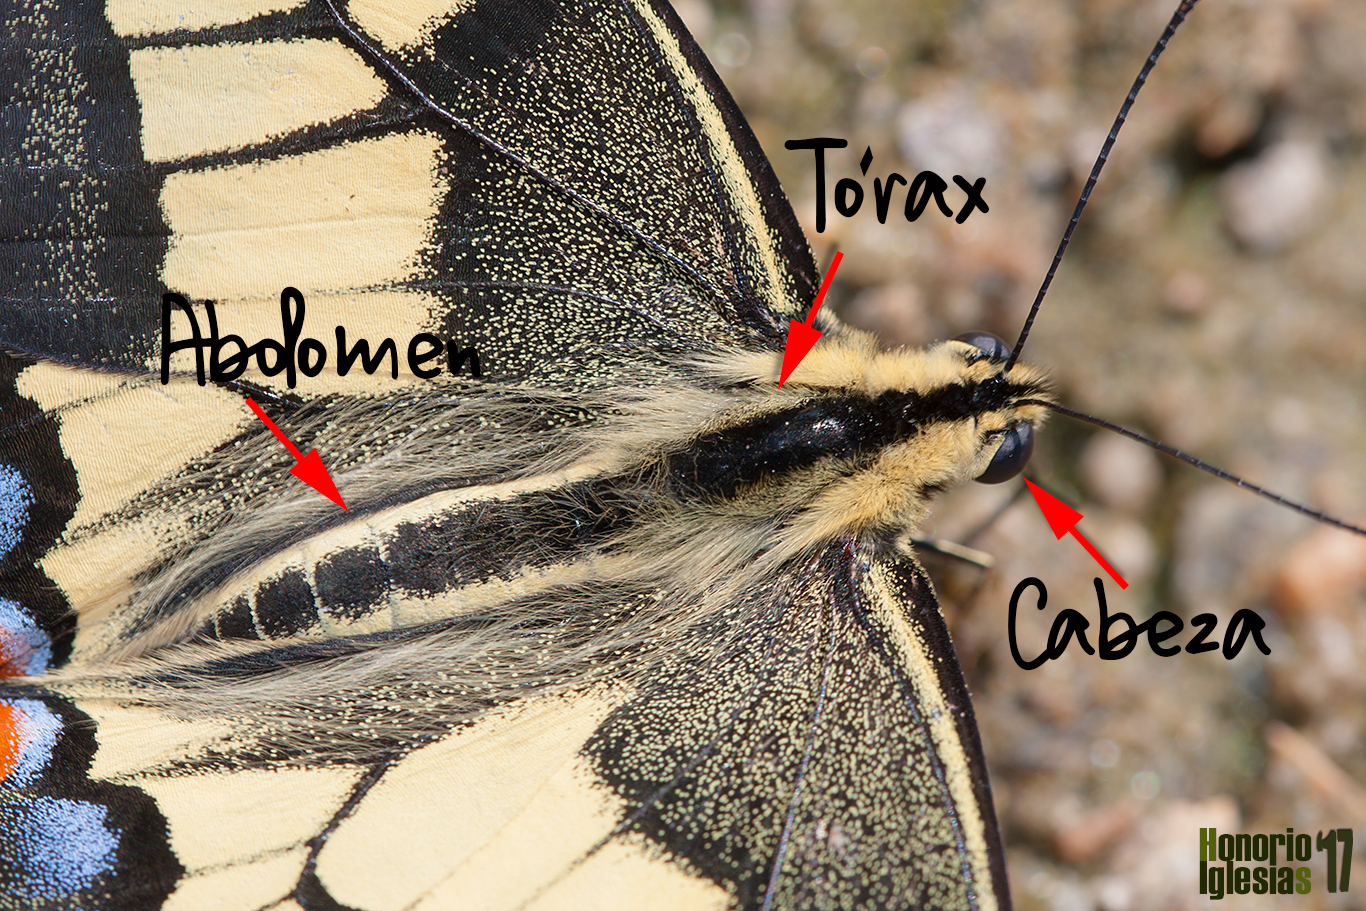 Detalle de un ejemplar de mariposa macaon (Papilio machaon), en la imagen se pueden apreciar las partes del cuerpo del insecto.